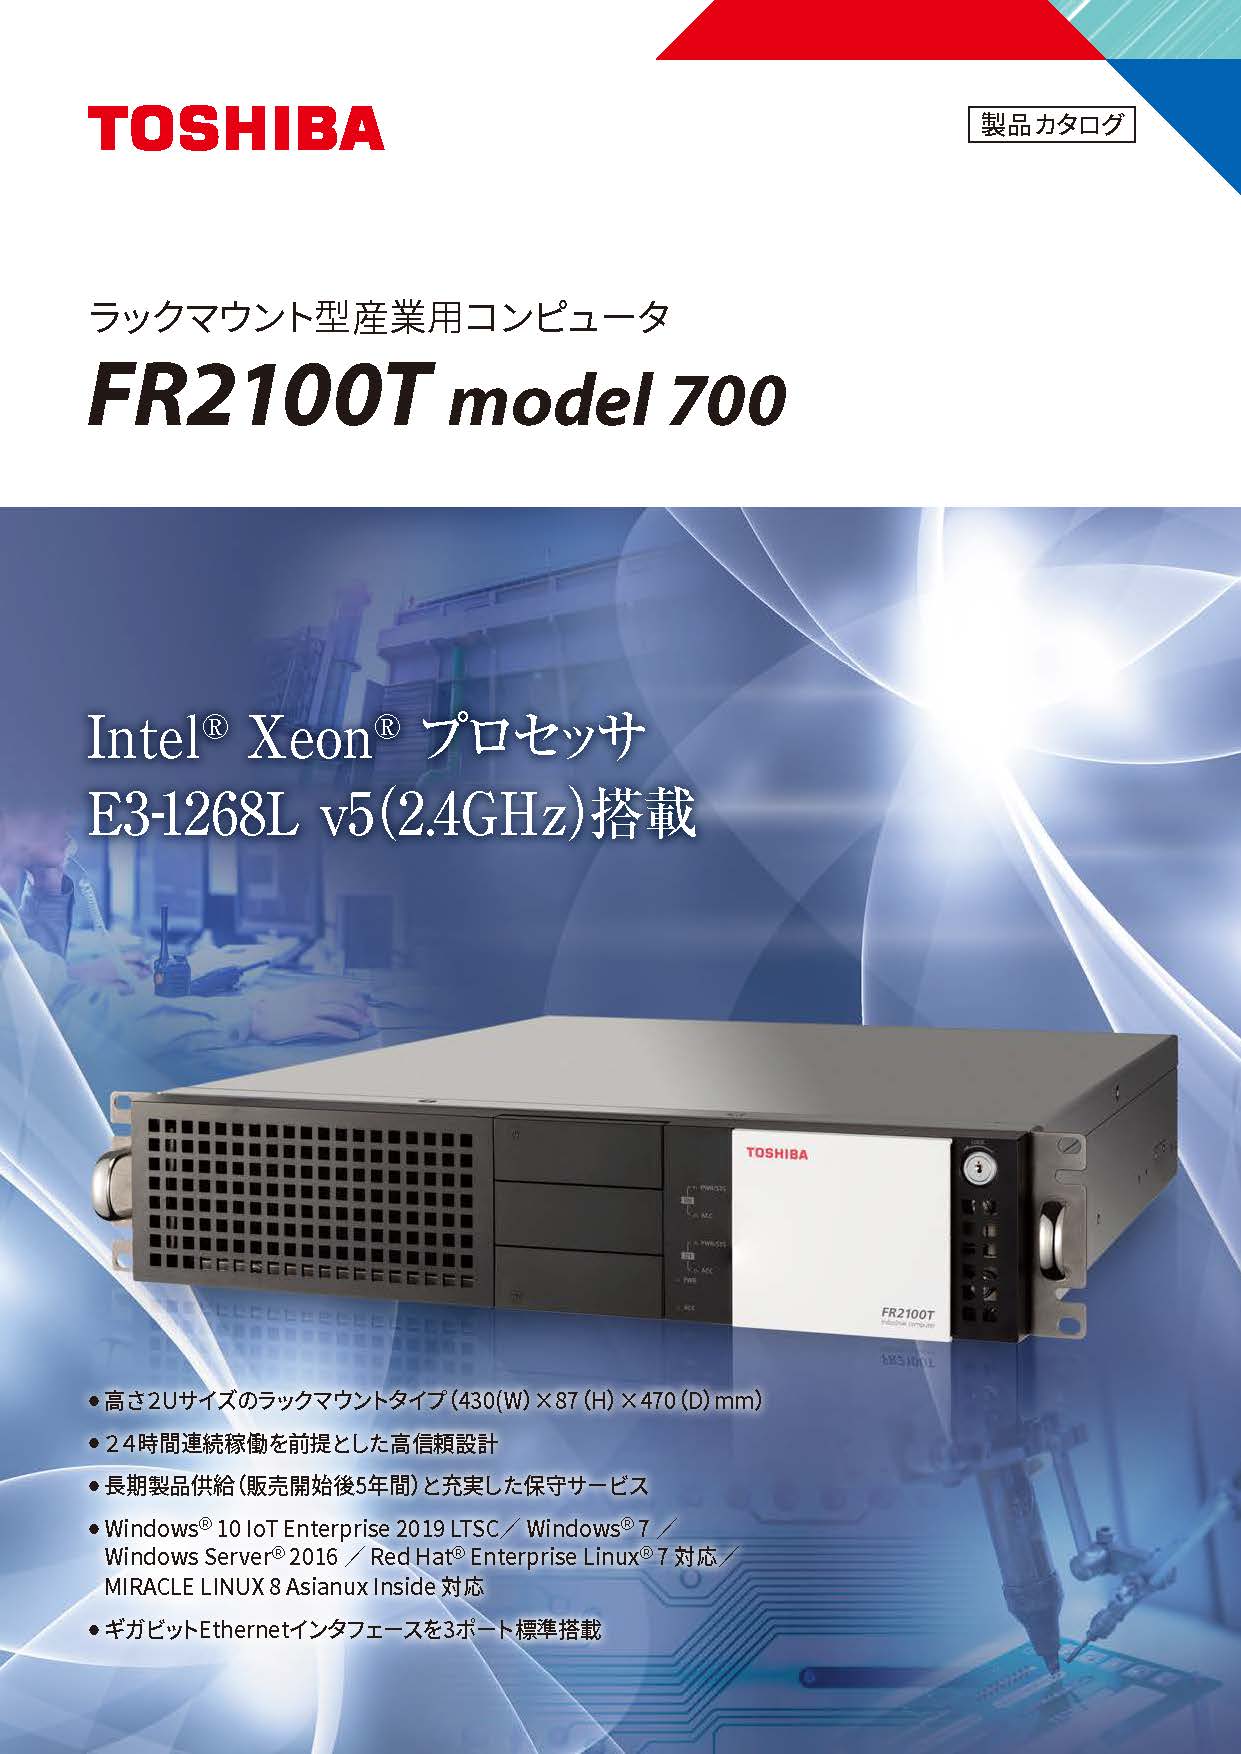 ラックマウント型産業用コンピュータ FR2100T model 700カタログ